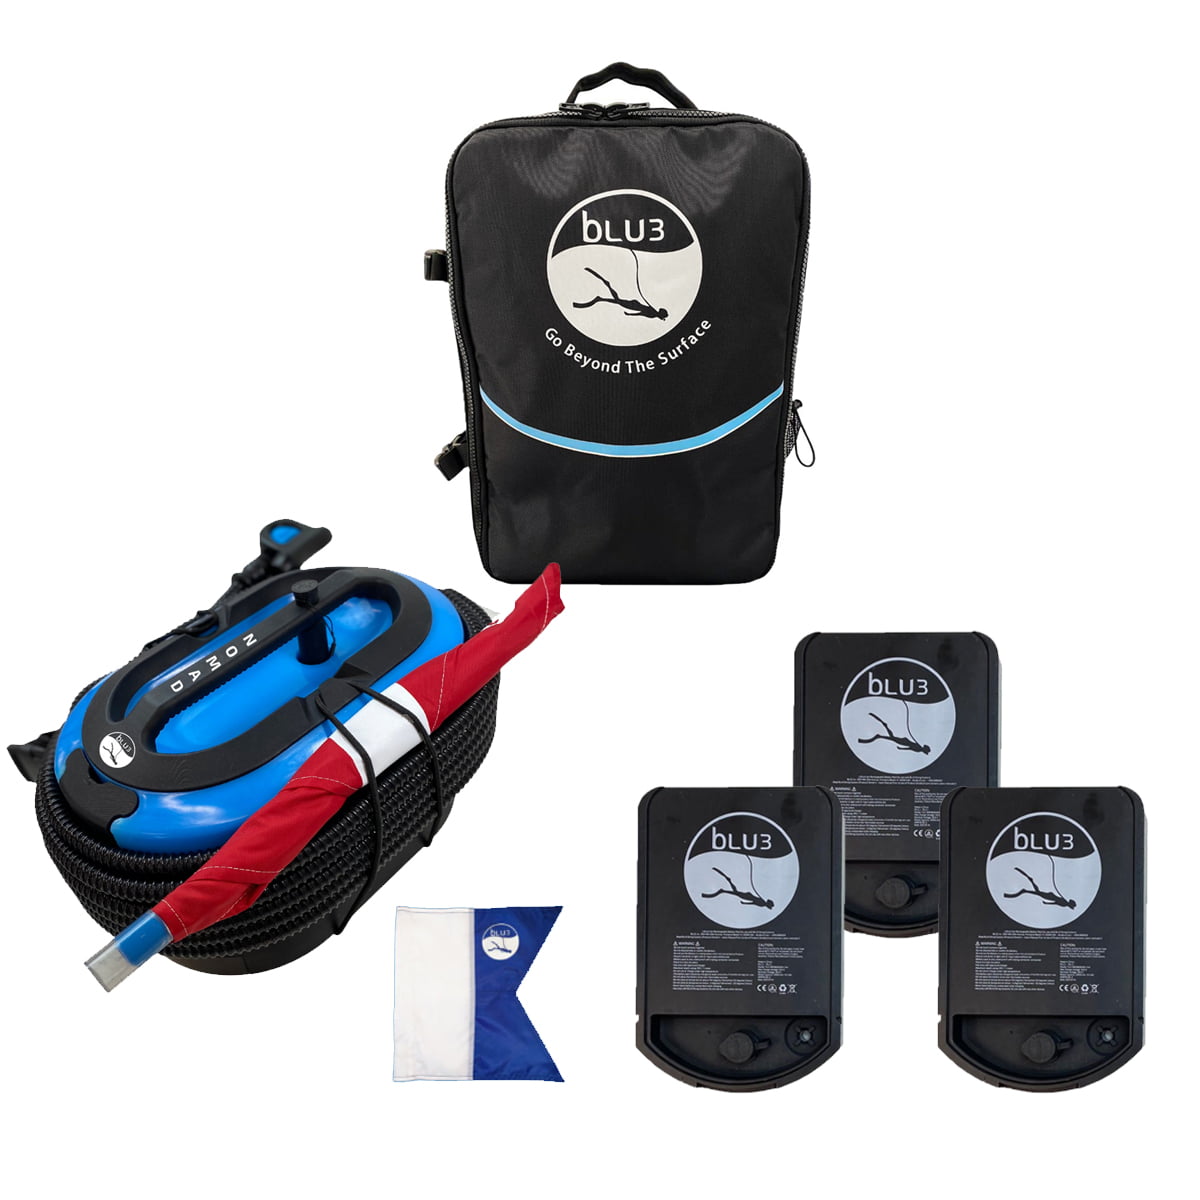 Verspilling krab wees stil Blue3 BLU3 Nomad + Backpack Dive System - Walmart.com